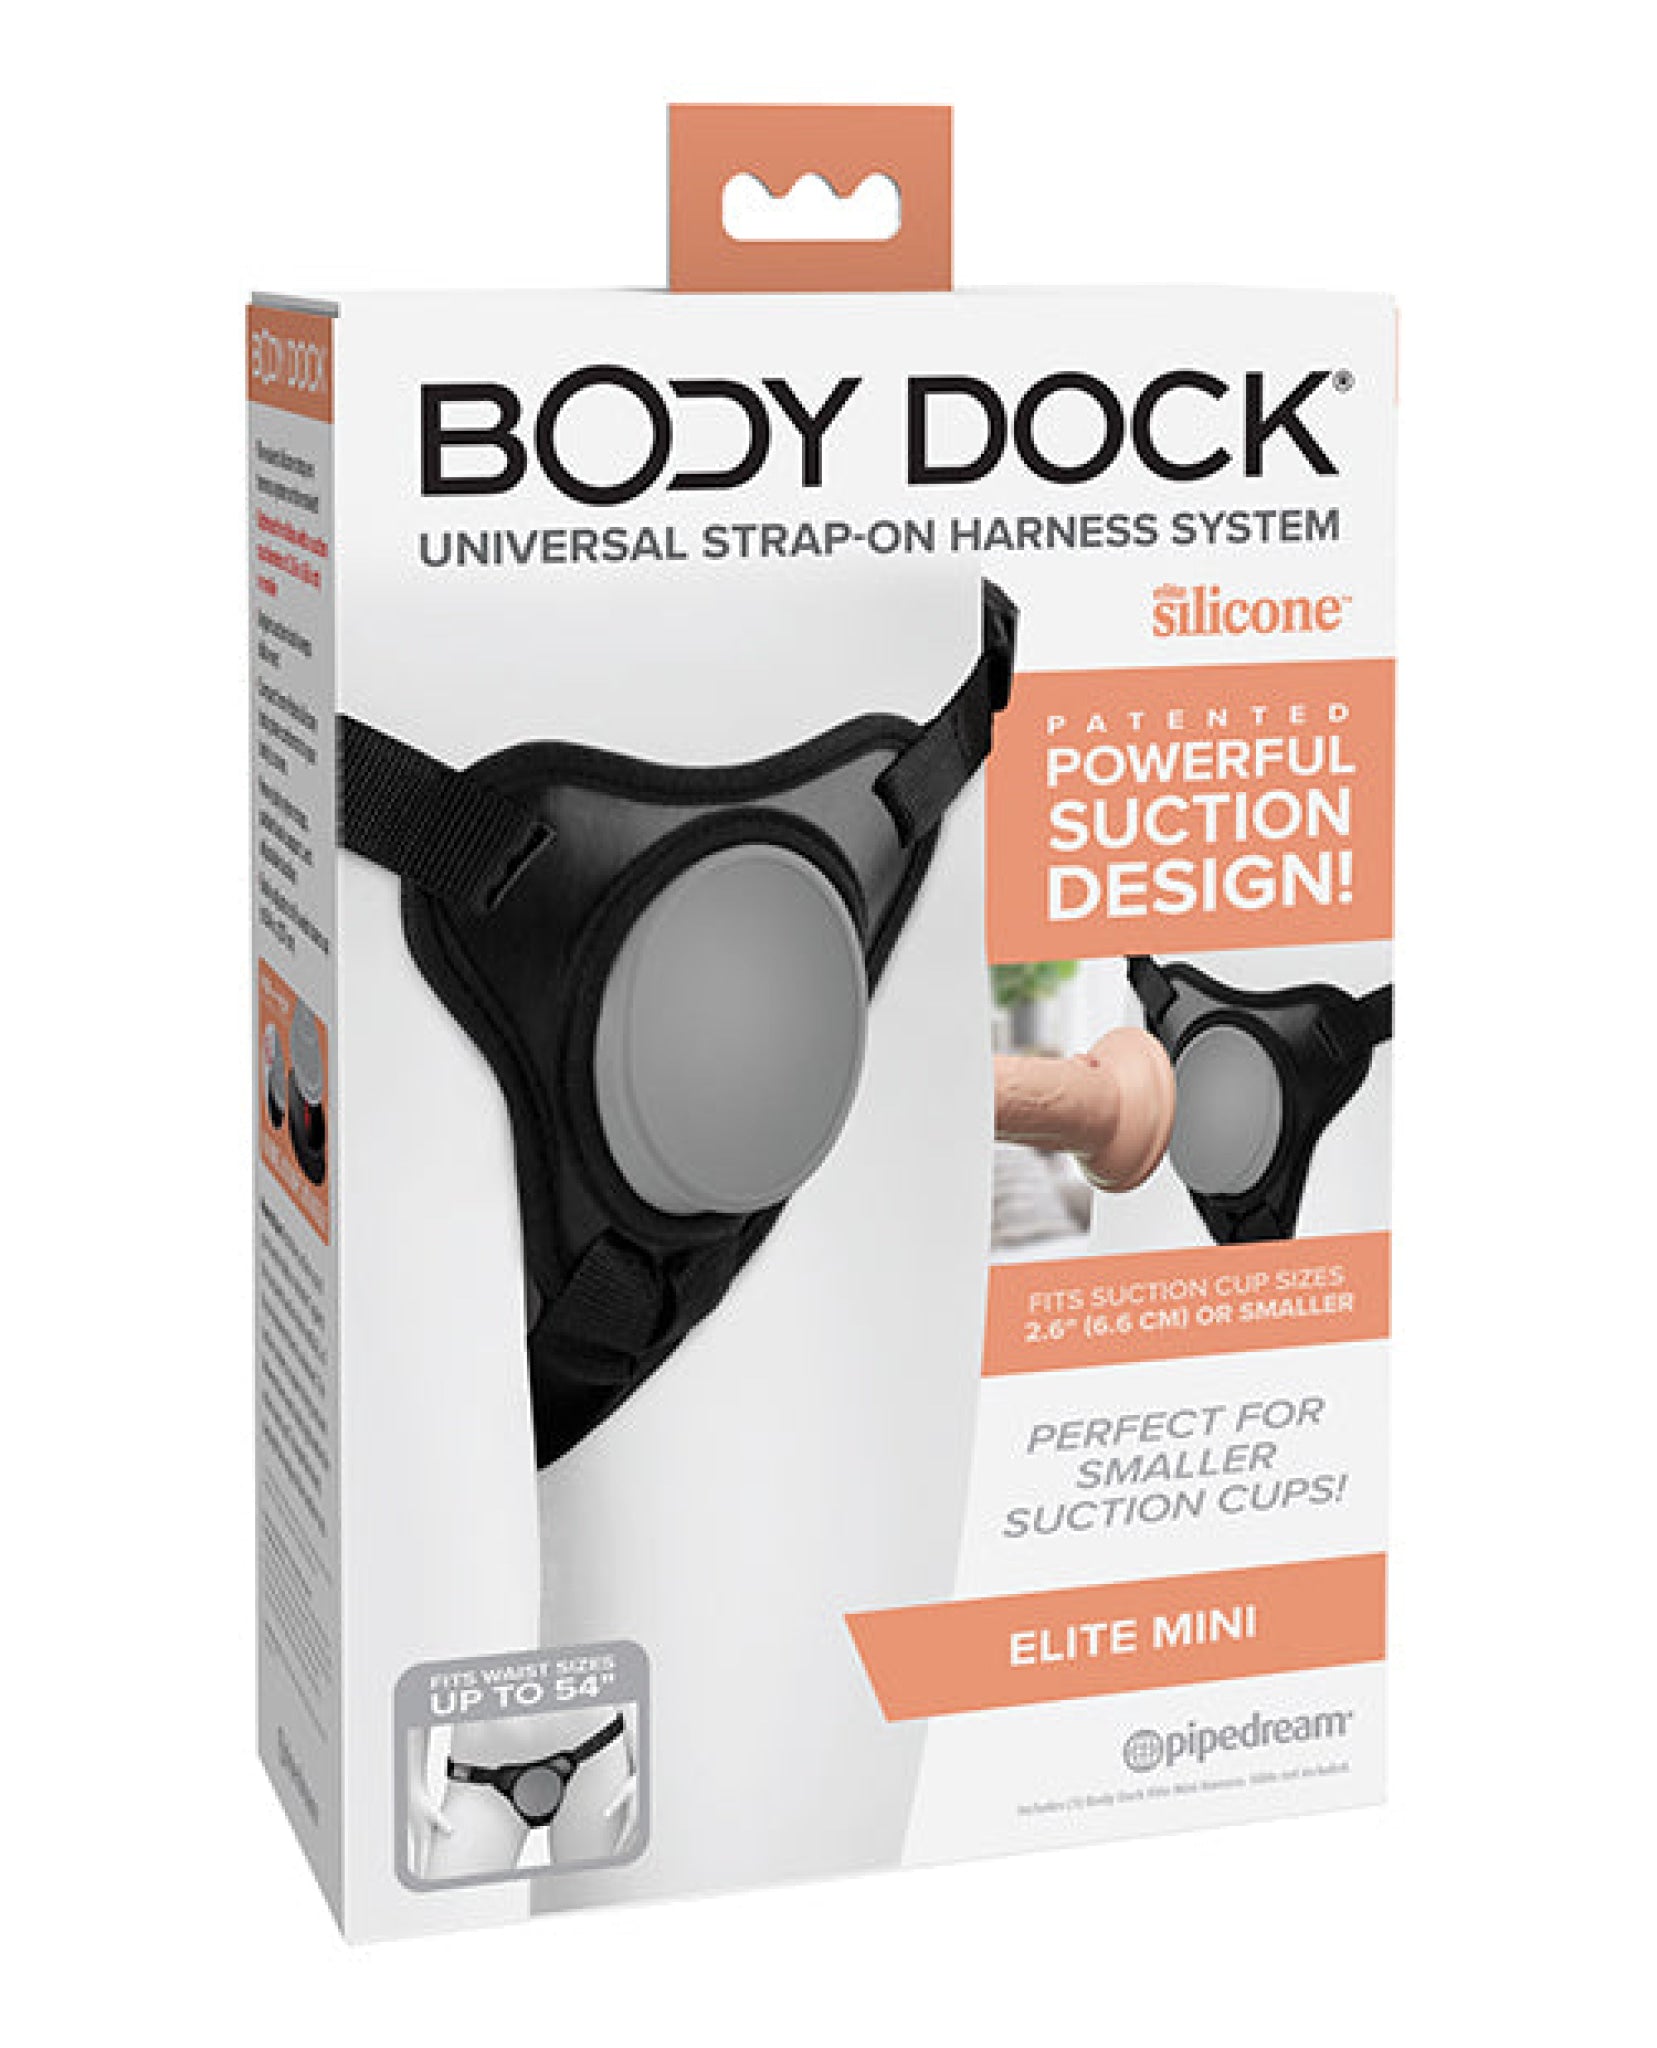 Body Dock Elite Mini Pipedream®